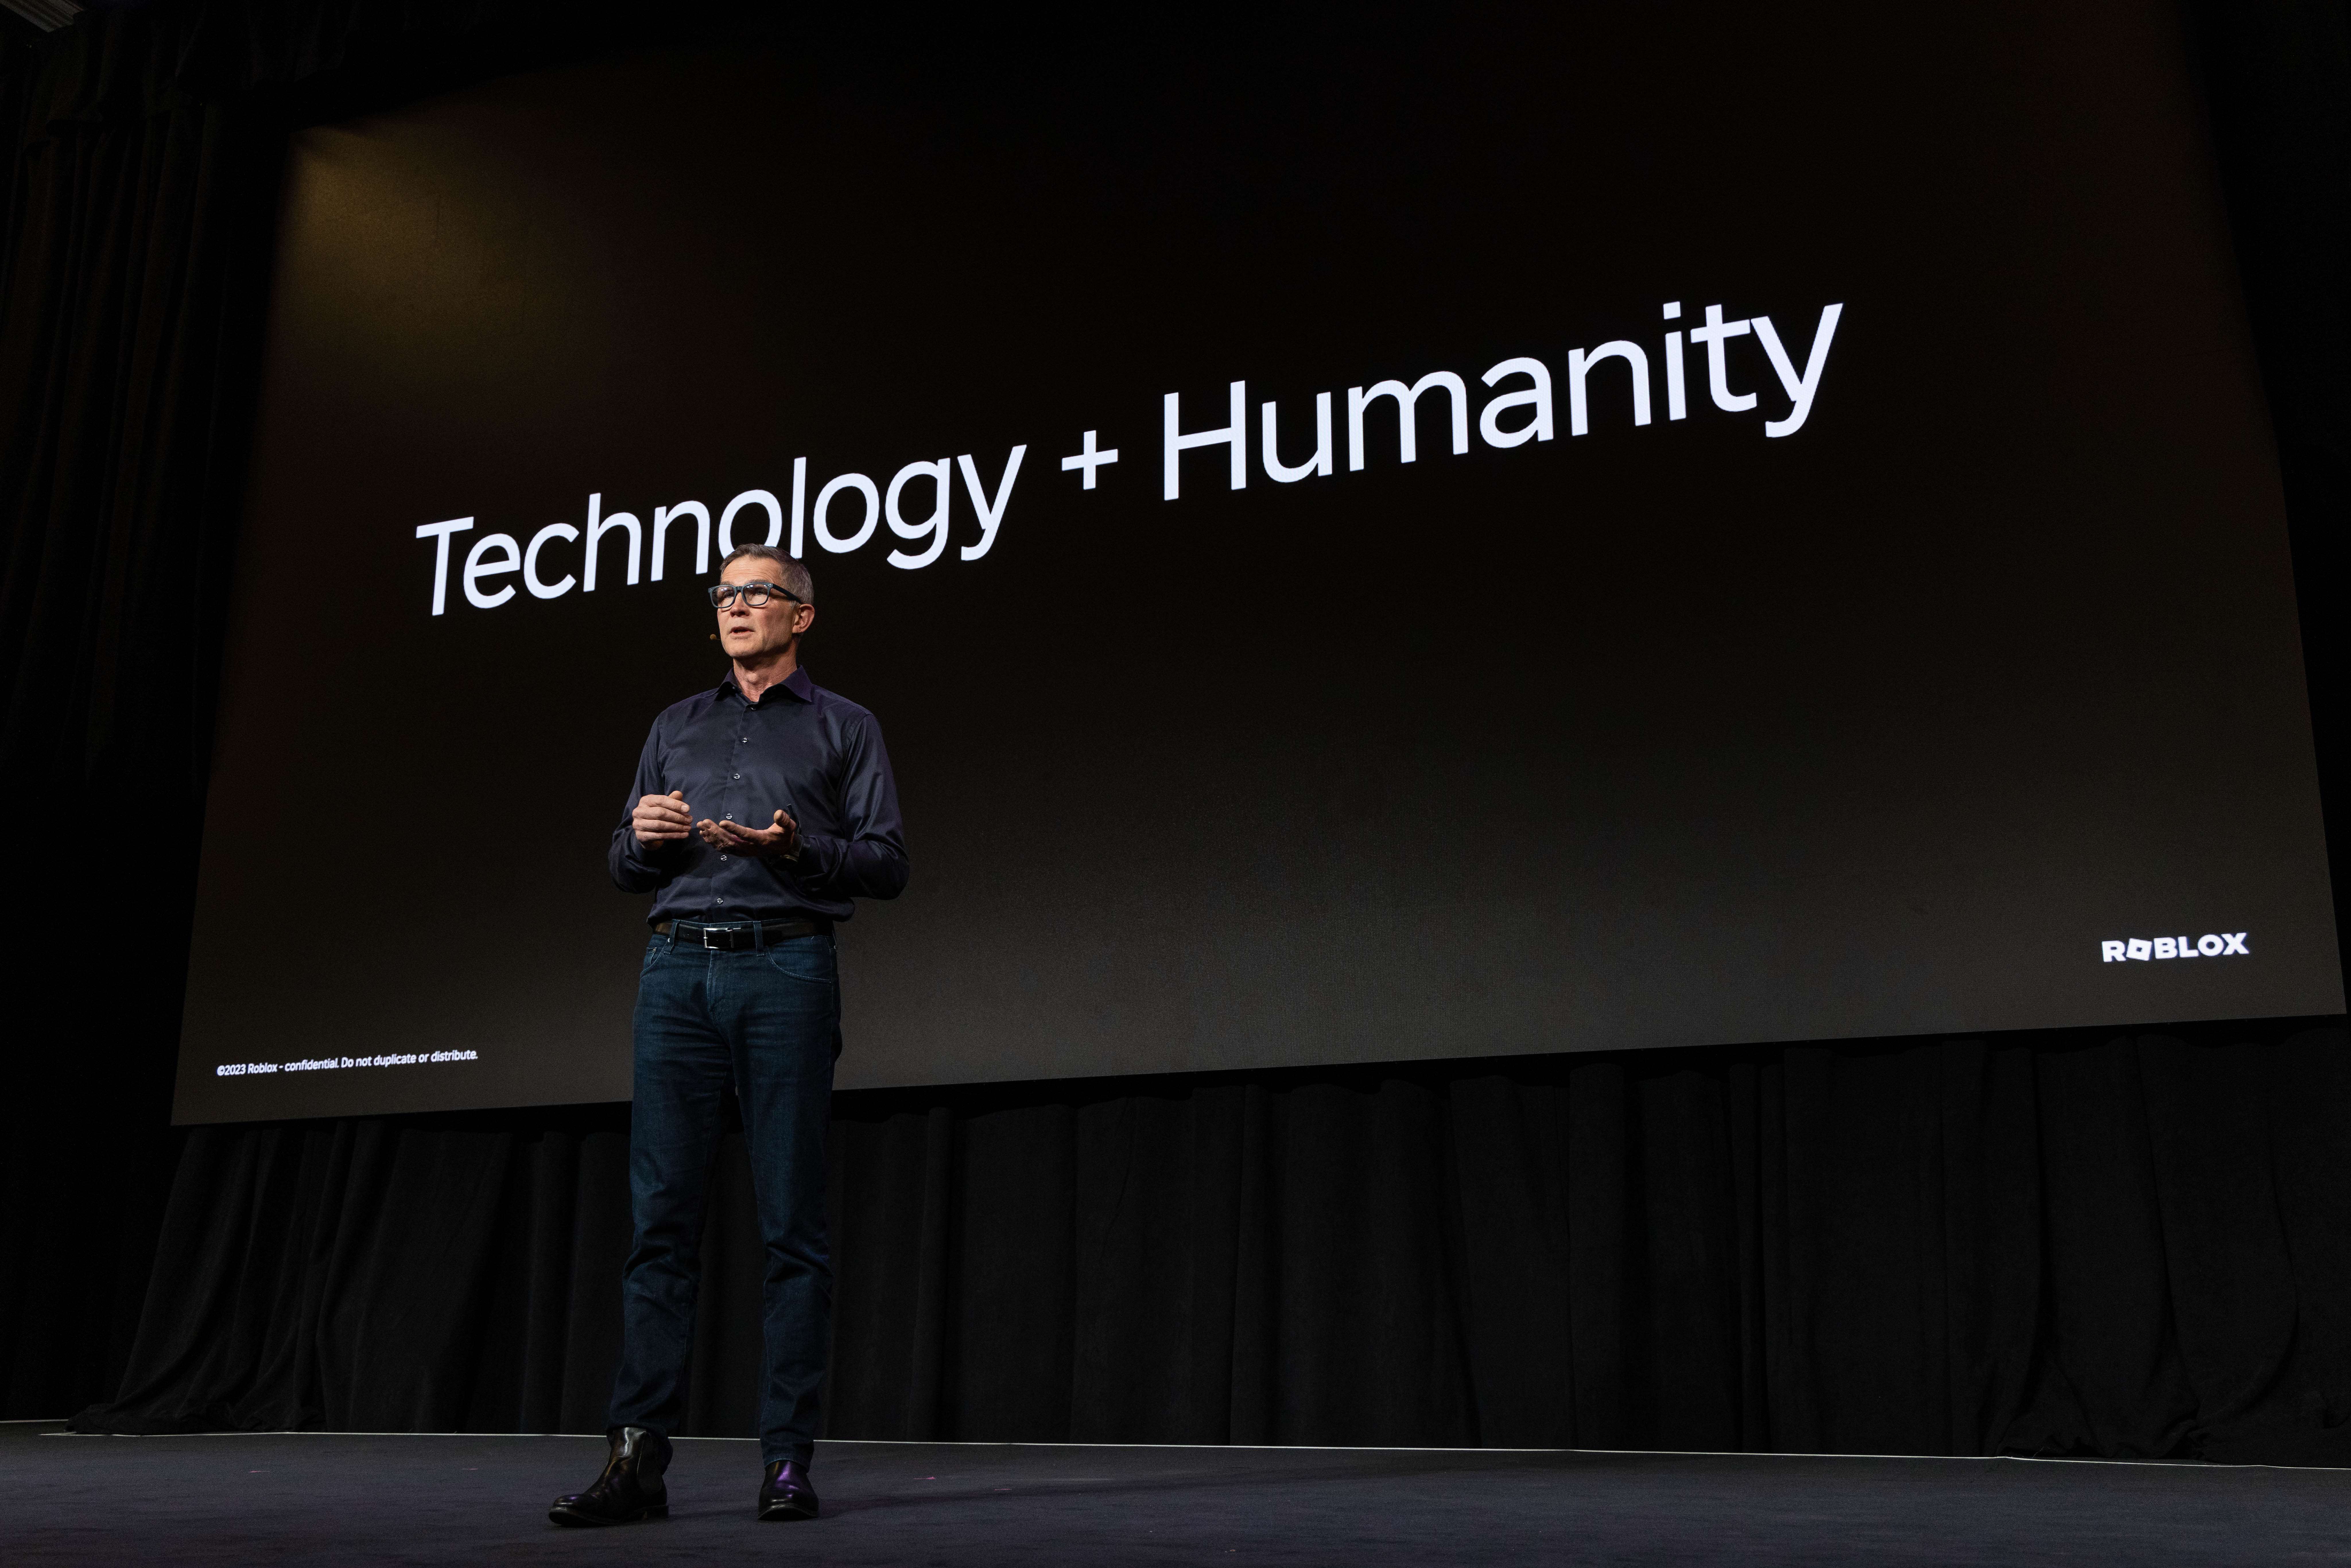 דוד עומד על הבמה מול מגלשה שכתוב עליה טכנולוגיה + אנושיות